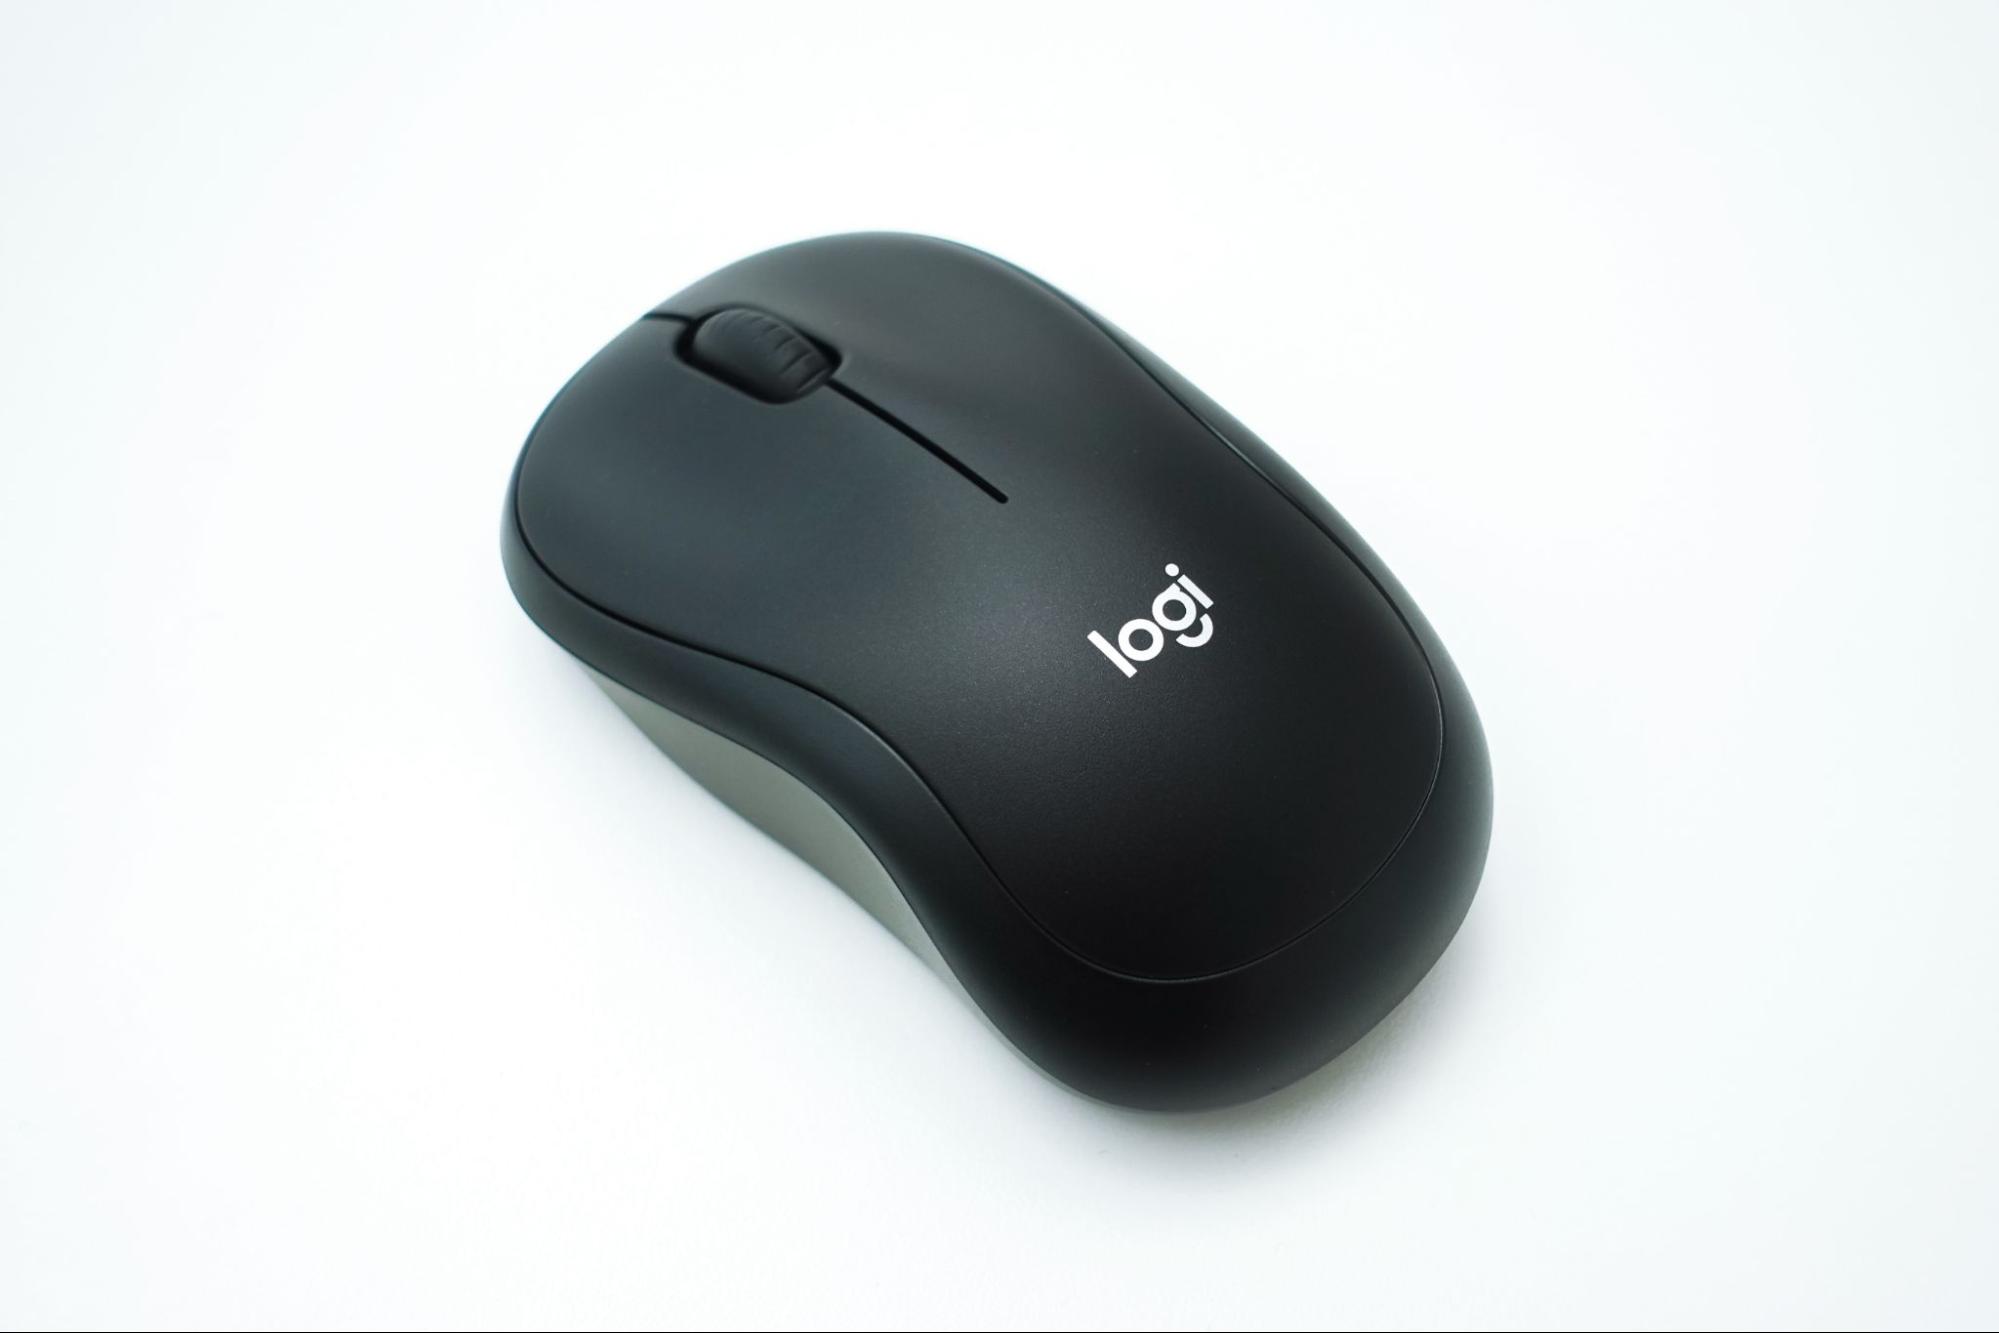 Imagem de um mouse com o scroll.